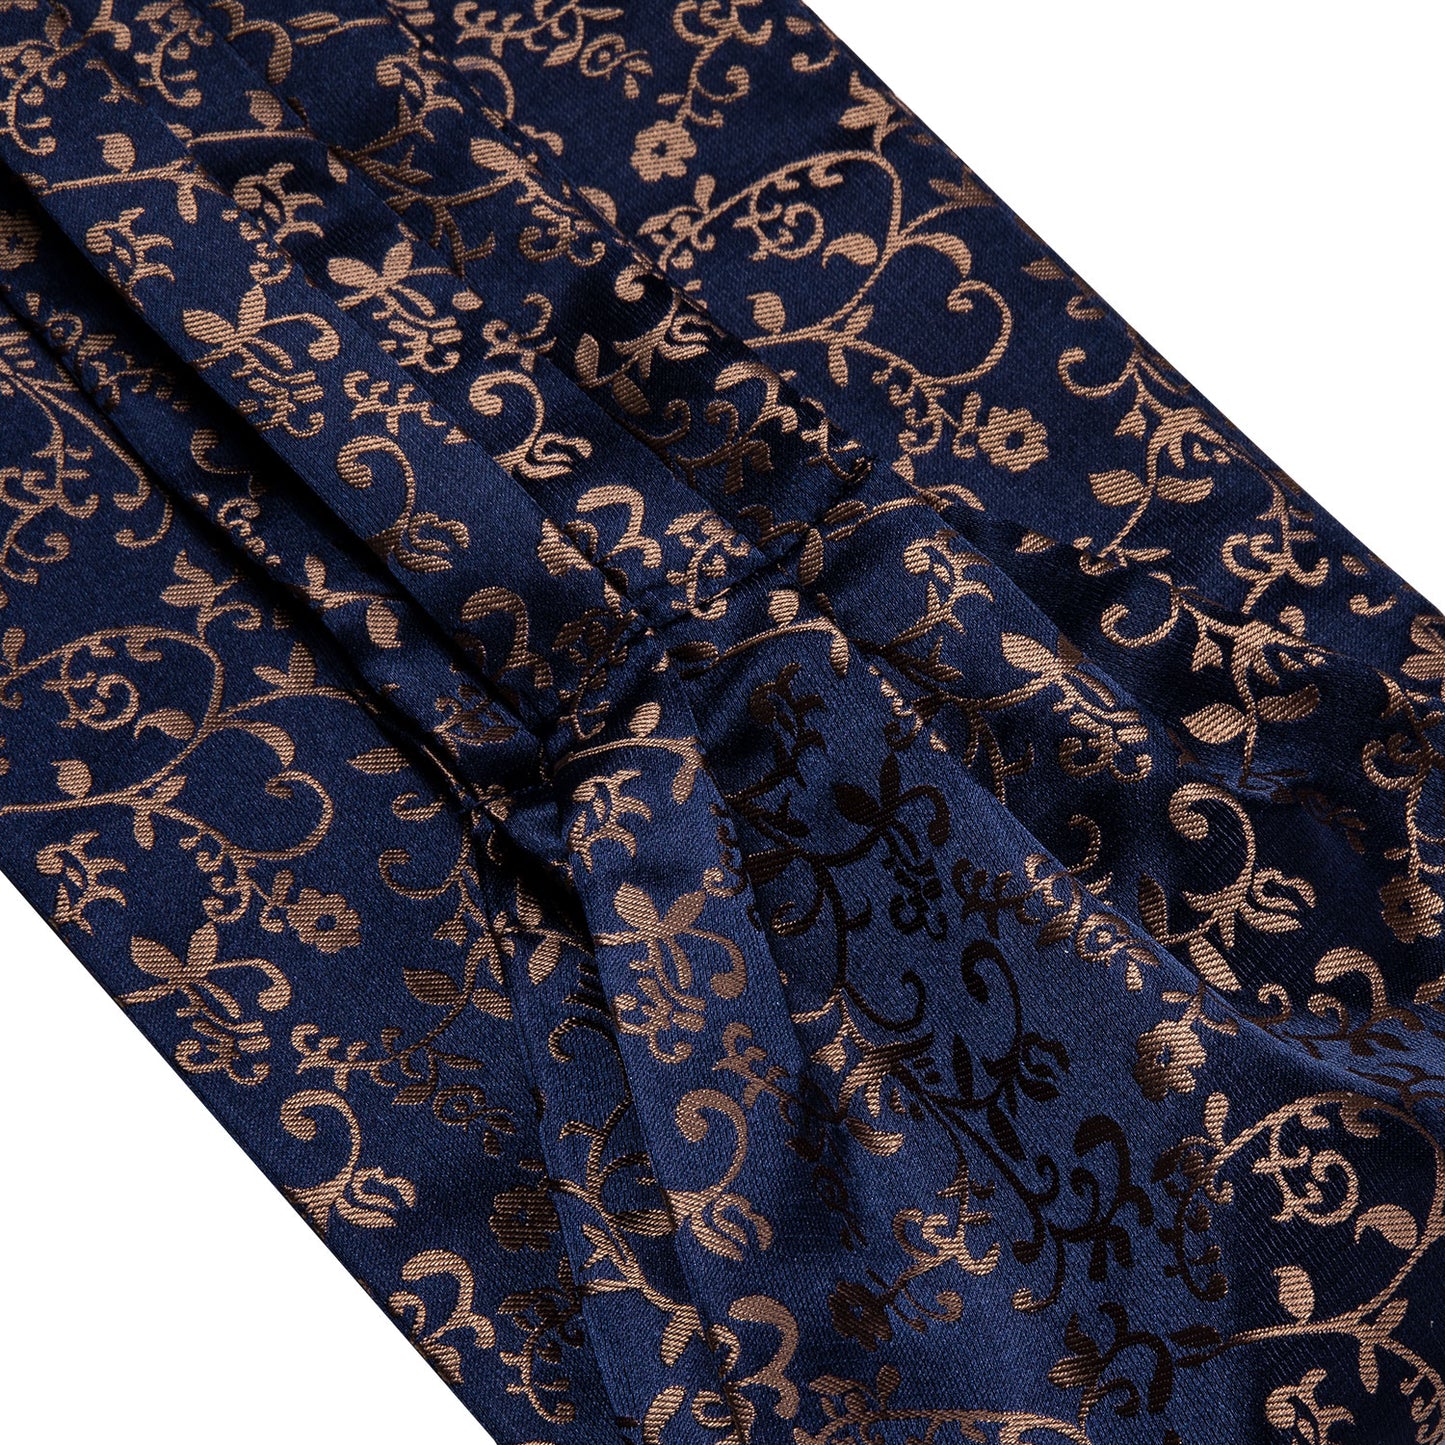 Victorian Ascot Silky Floral Day Cravat Set [Navy Garden]